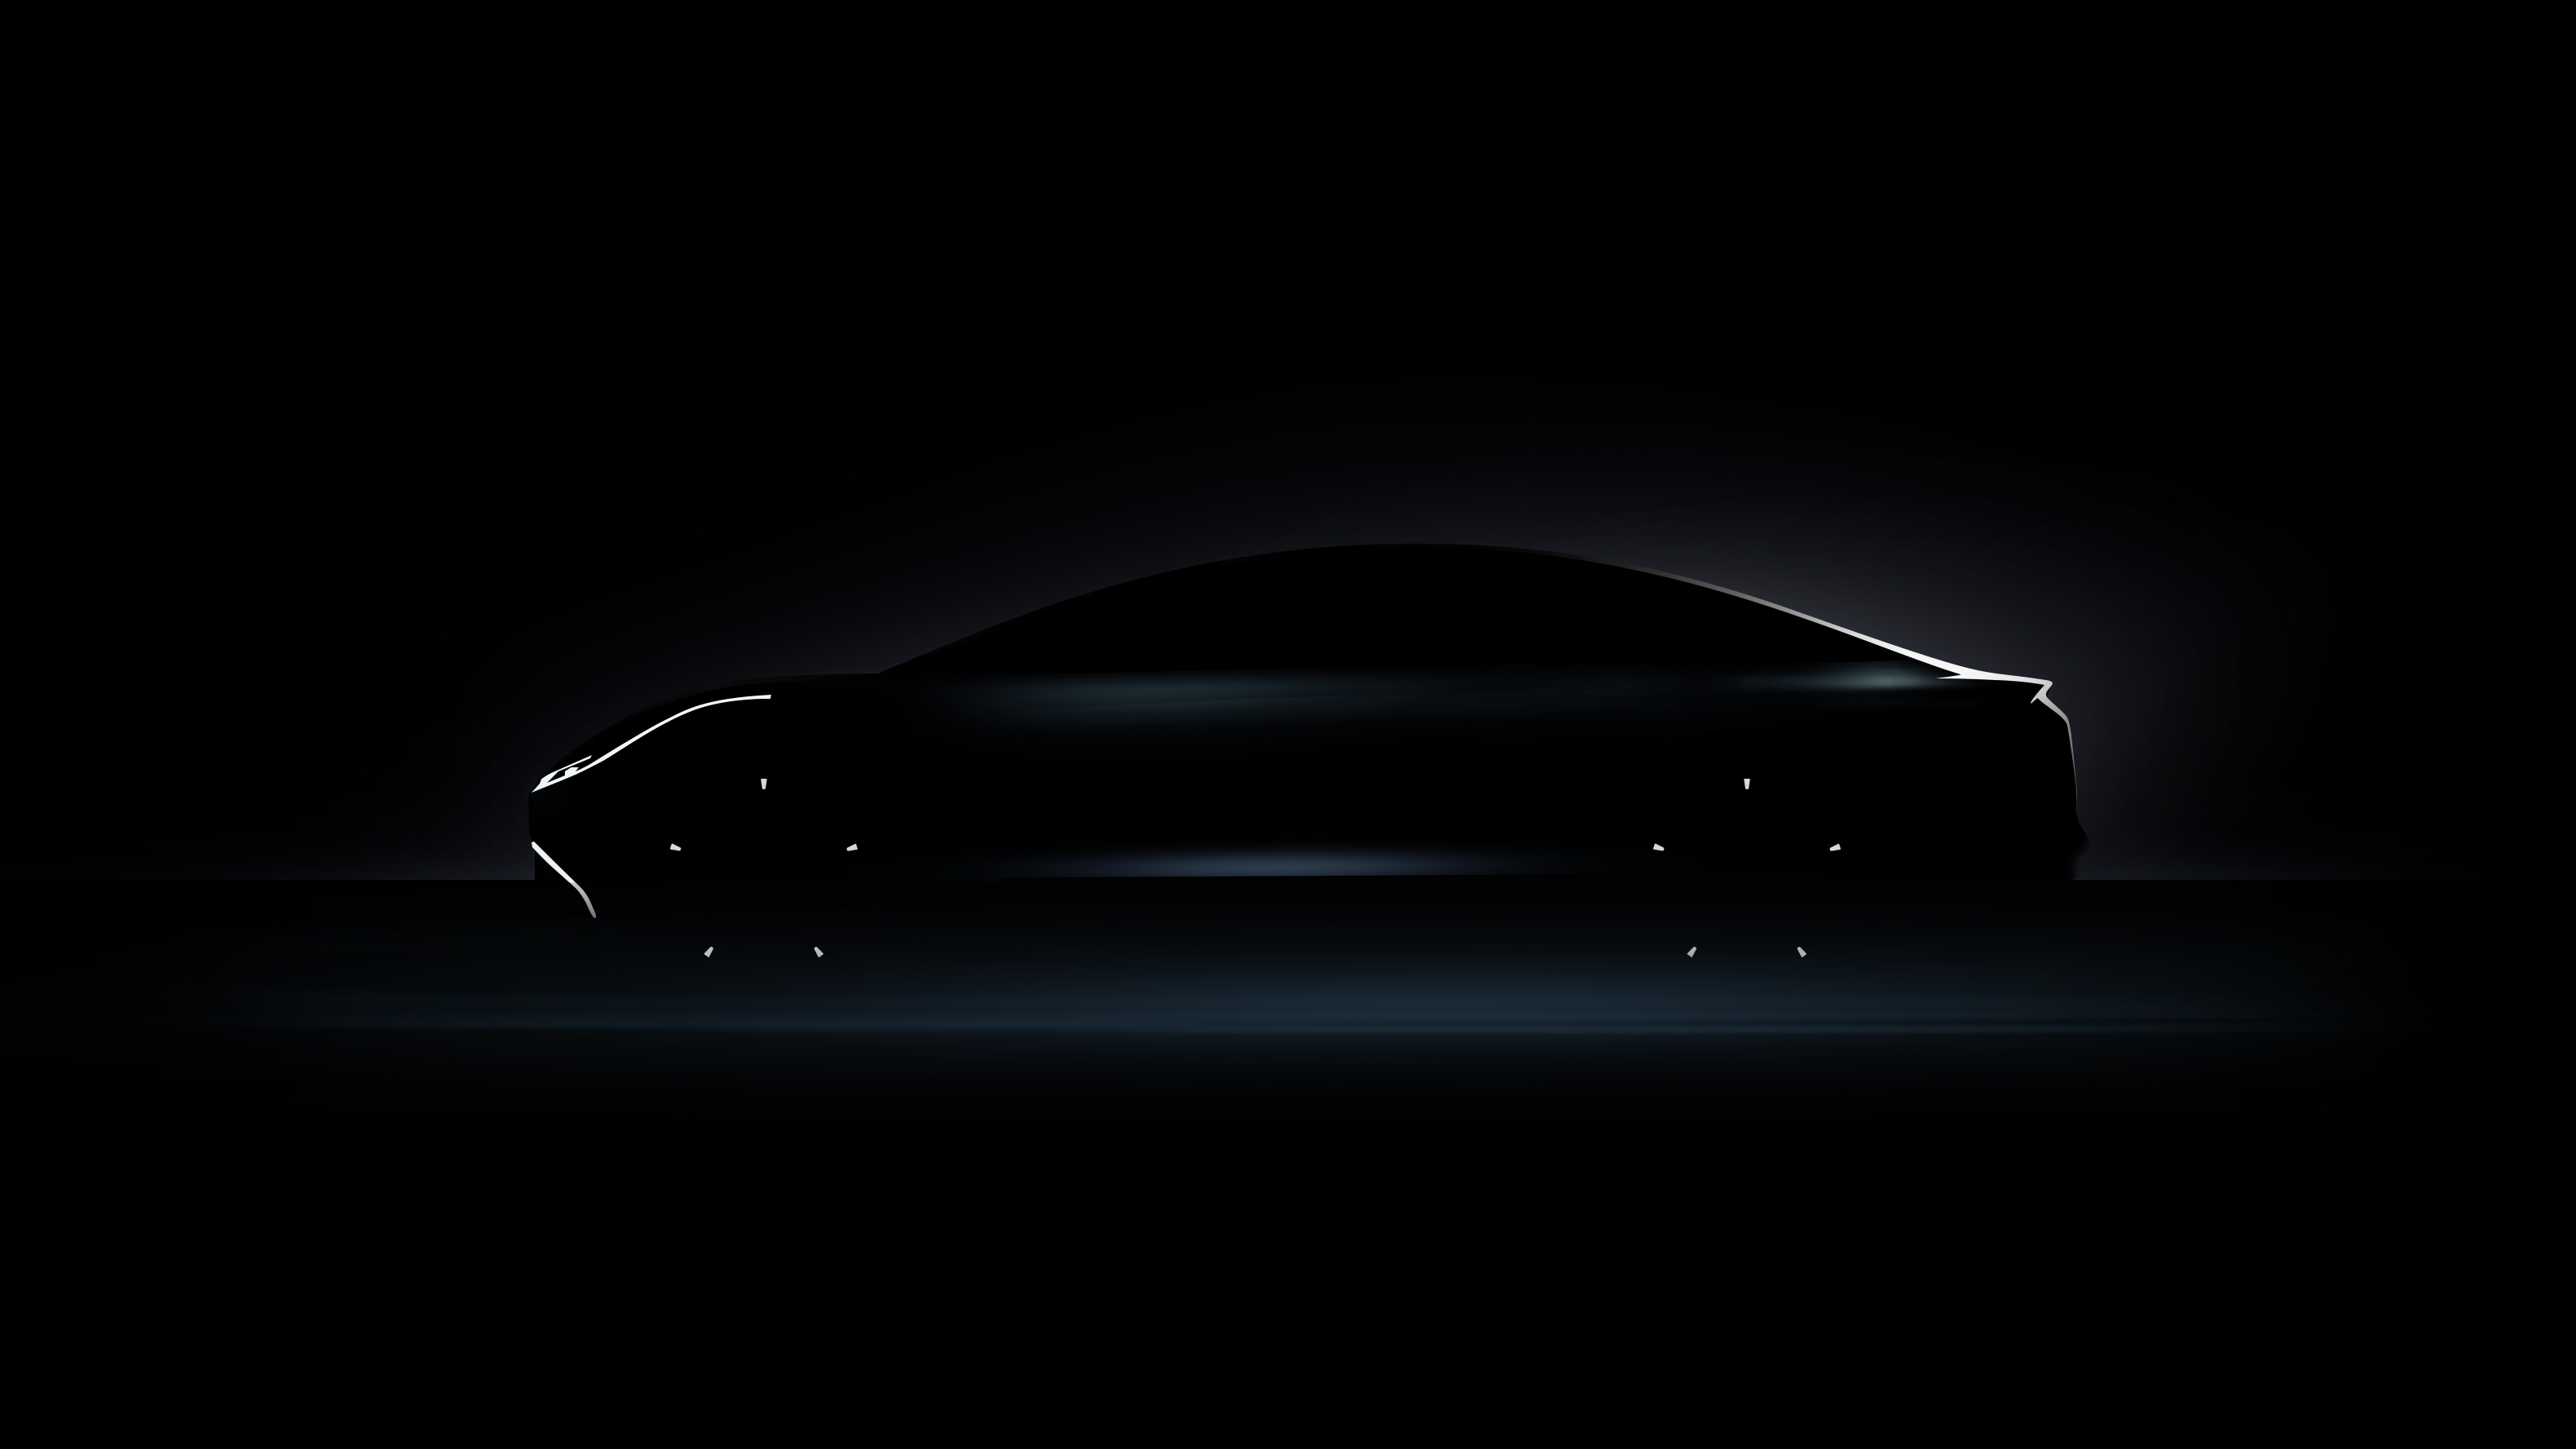 将于5月10日亮相 威马公布首款纯电动轿车概念版预告图